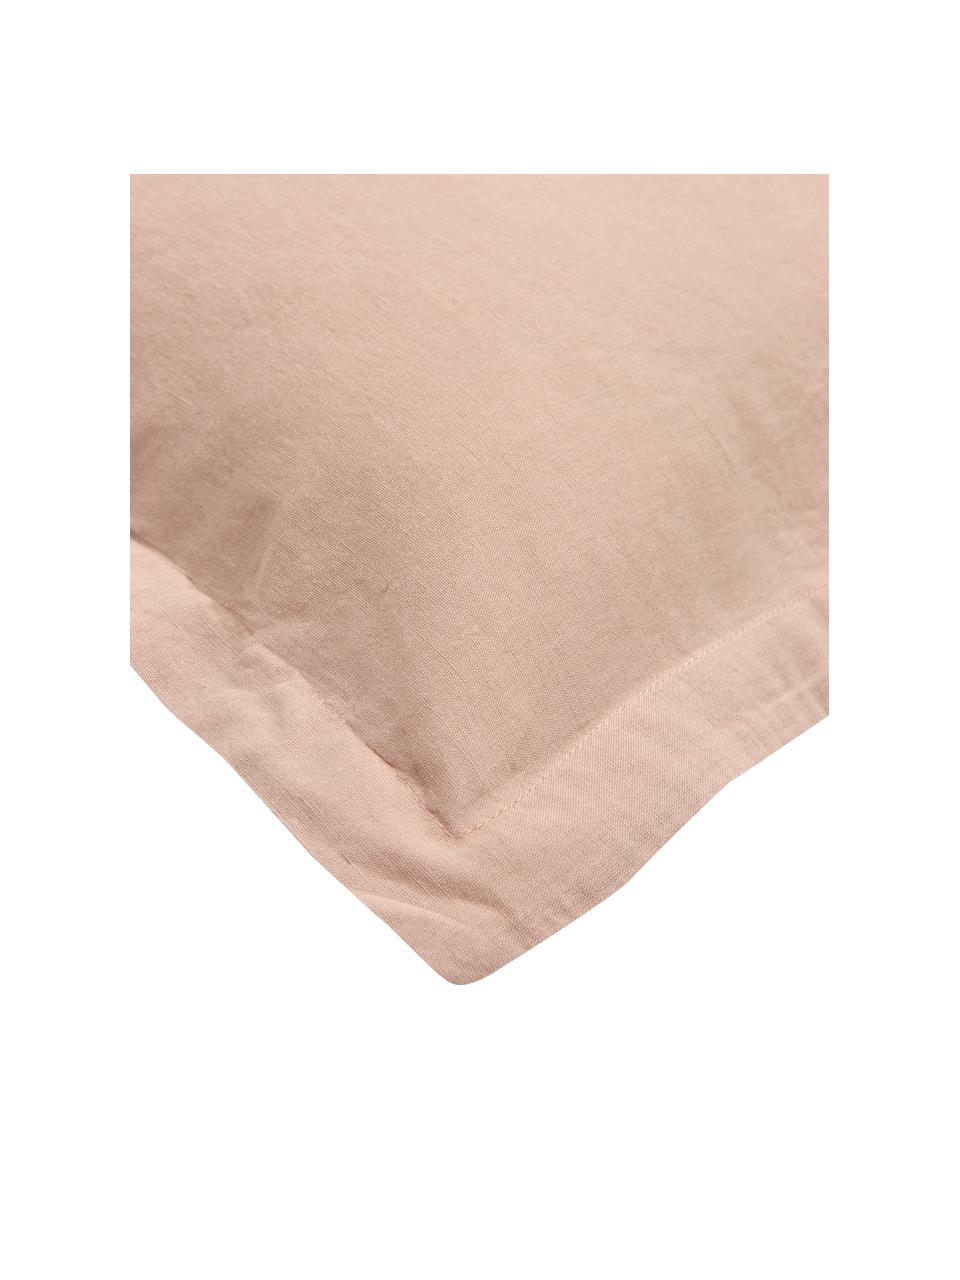 Biancheria da letto in lino lavato rosa Nature, Mezzo lino
(52% lino, 48% cotone)

Densità dei fili 108 TC, qualità standard

Il mezzo lino offre una sensazione piacevole e ha un naturale aspetto sgualcito, che viene esaltato dall'effetto stonewash. Assorbe fino al 35% di umidità, si asciuga molto rapidamente e ha un effetto piacevolmente rinfrescante nelle notti d'estate. L'elevata resistenza allo strappo rende il mezzo lino resistente all'abrasione e all'usura, Rosa cipria, Larg. 155 x Lung. 200 cm